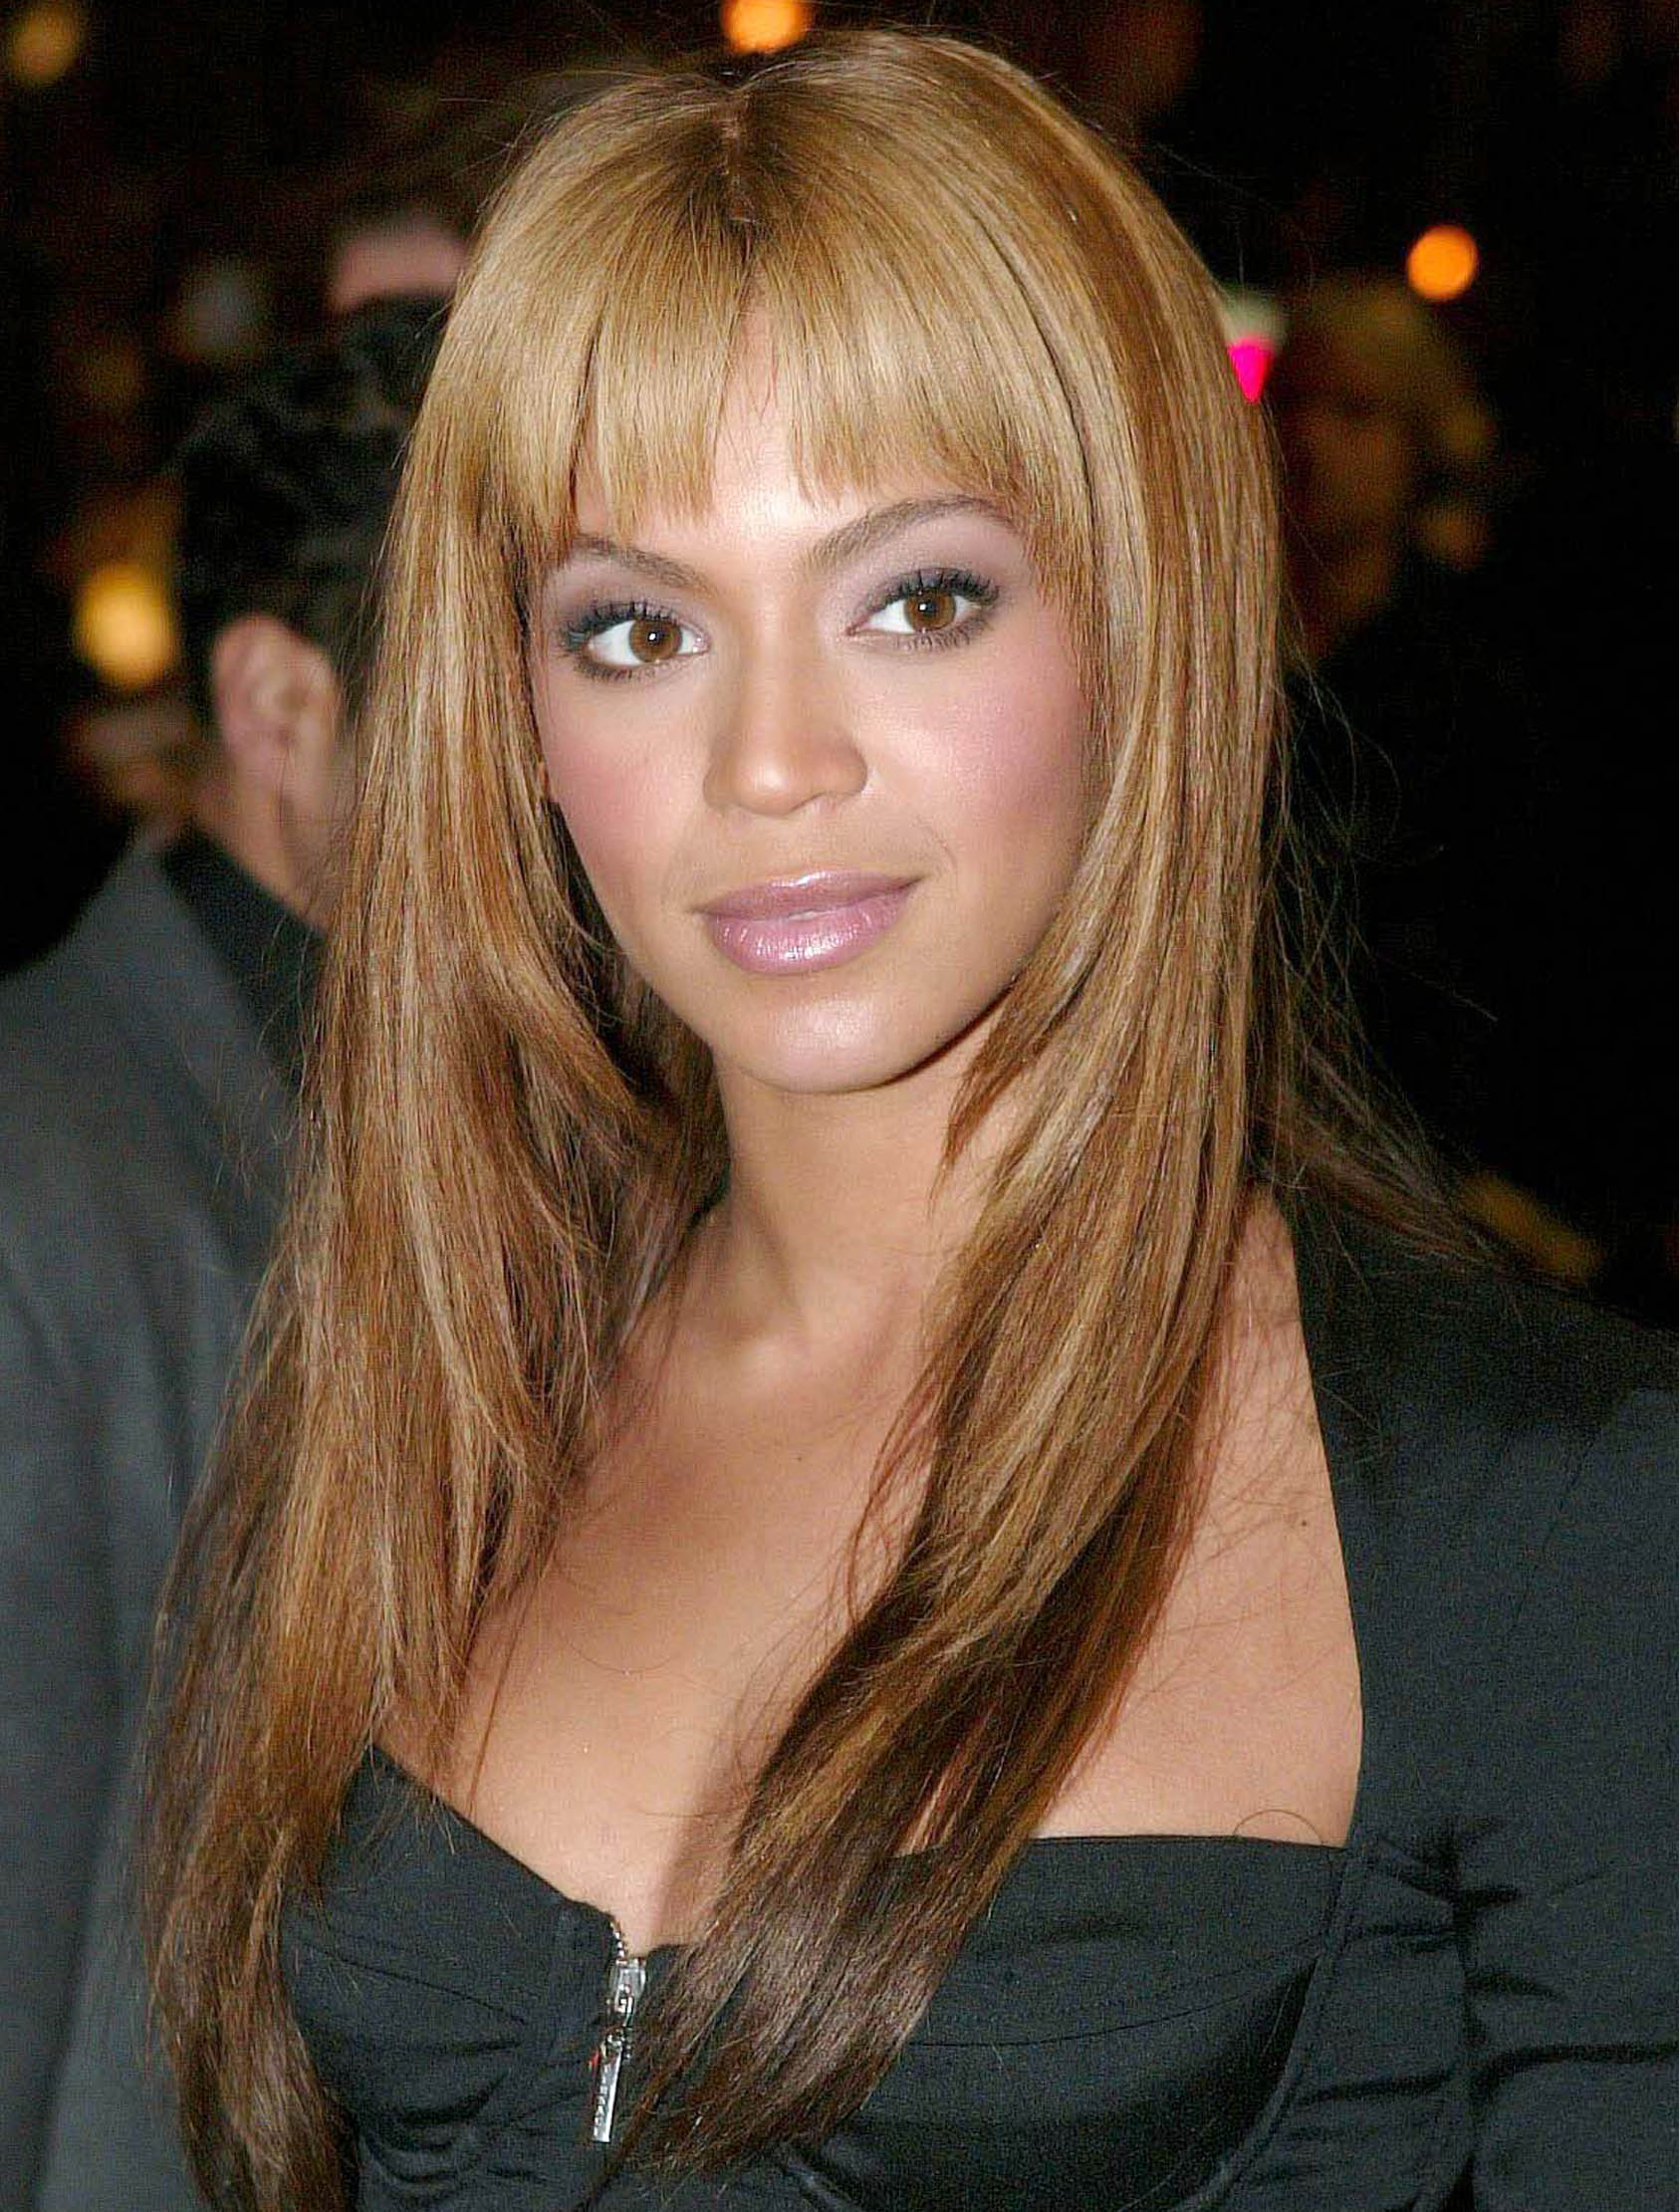 General photo of Beyoncé Knowles